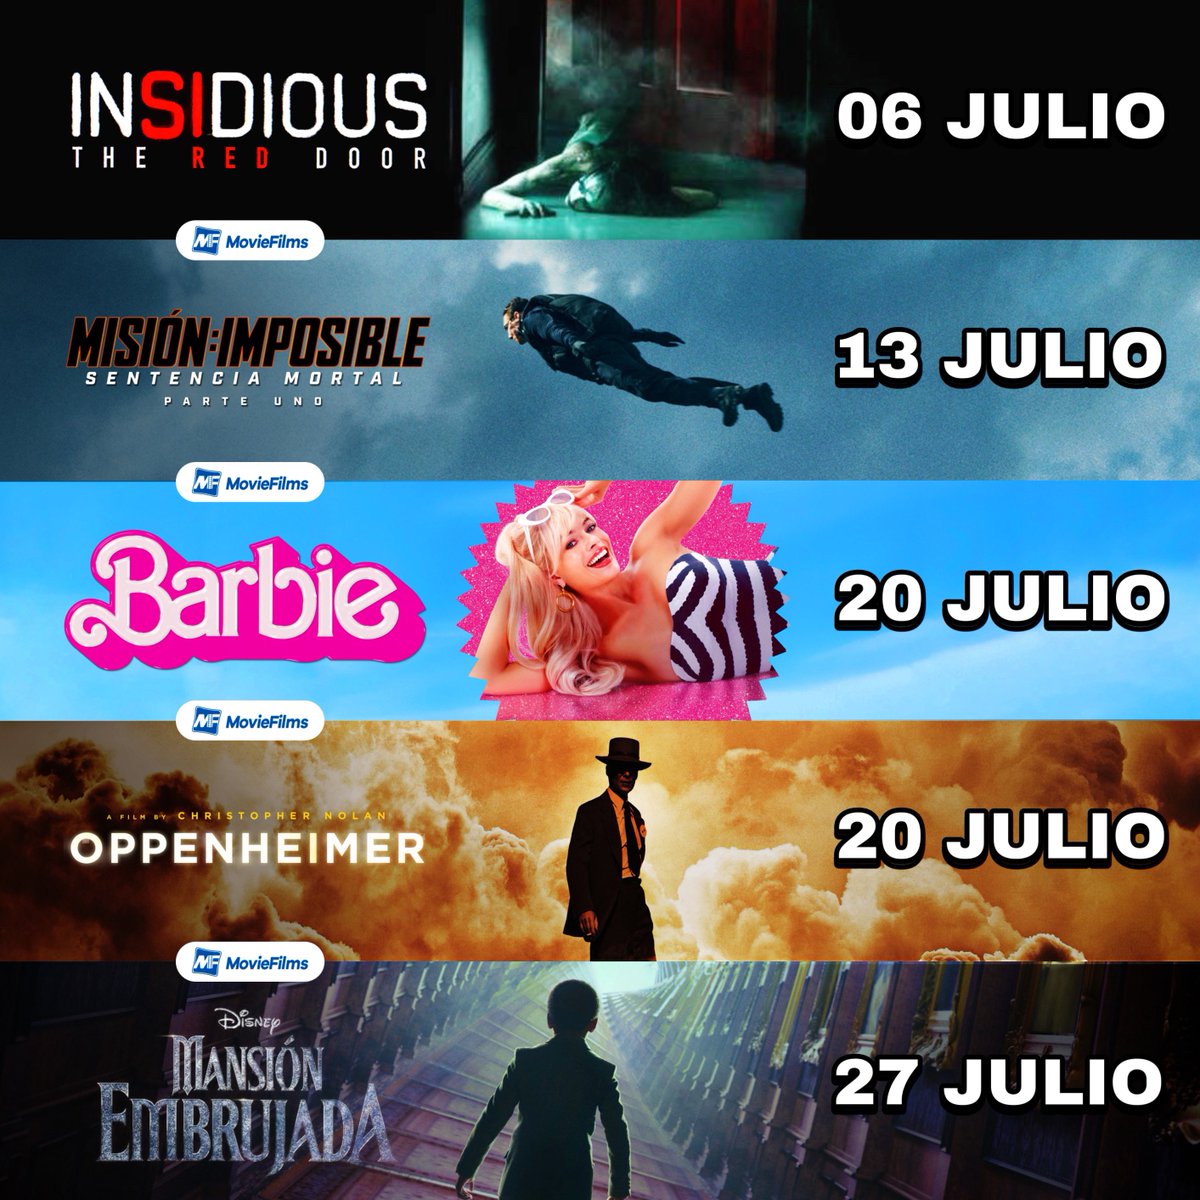 Estas son las películas de estreno de Julio:

06 de julio - #Insidious #TheRedDoor
13 de julio - #MissionImpossible
20 de julio - #Barbie
20 de julio - #Oppenheimer
27 de julio - #MansiónEmbrujada